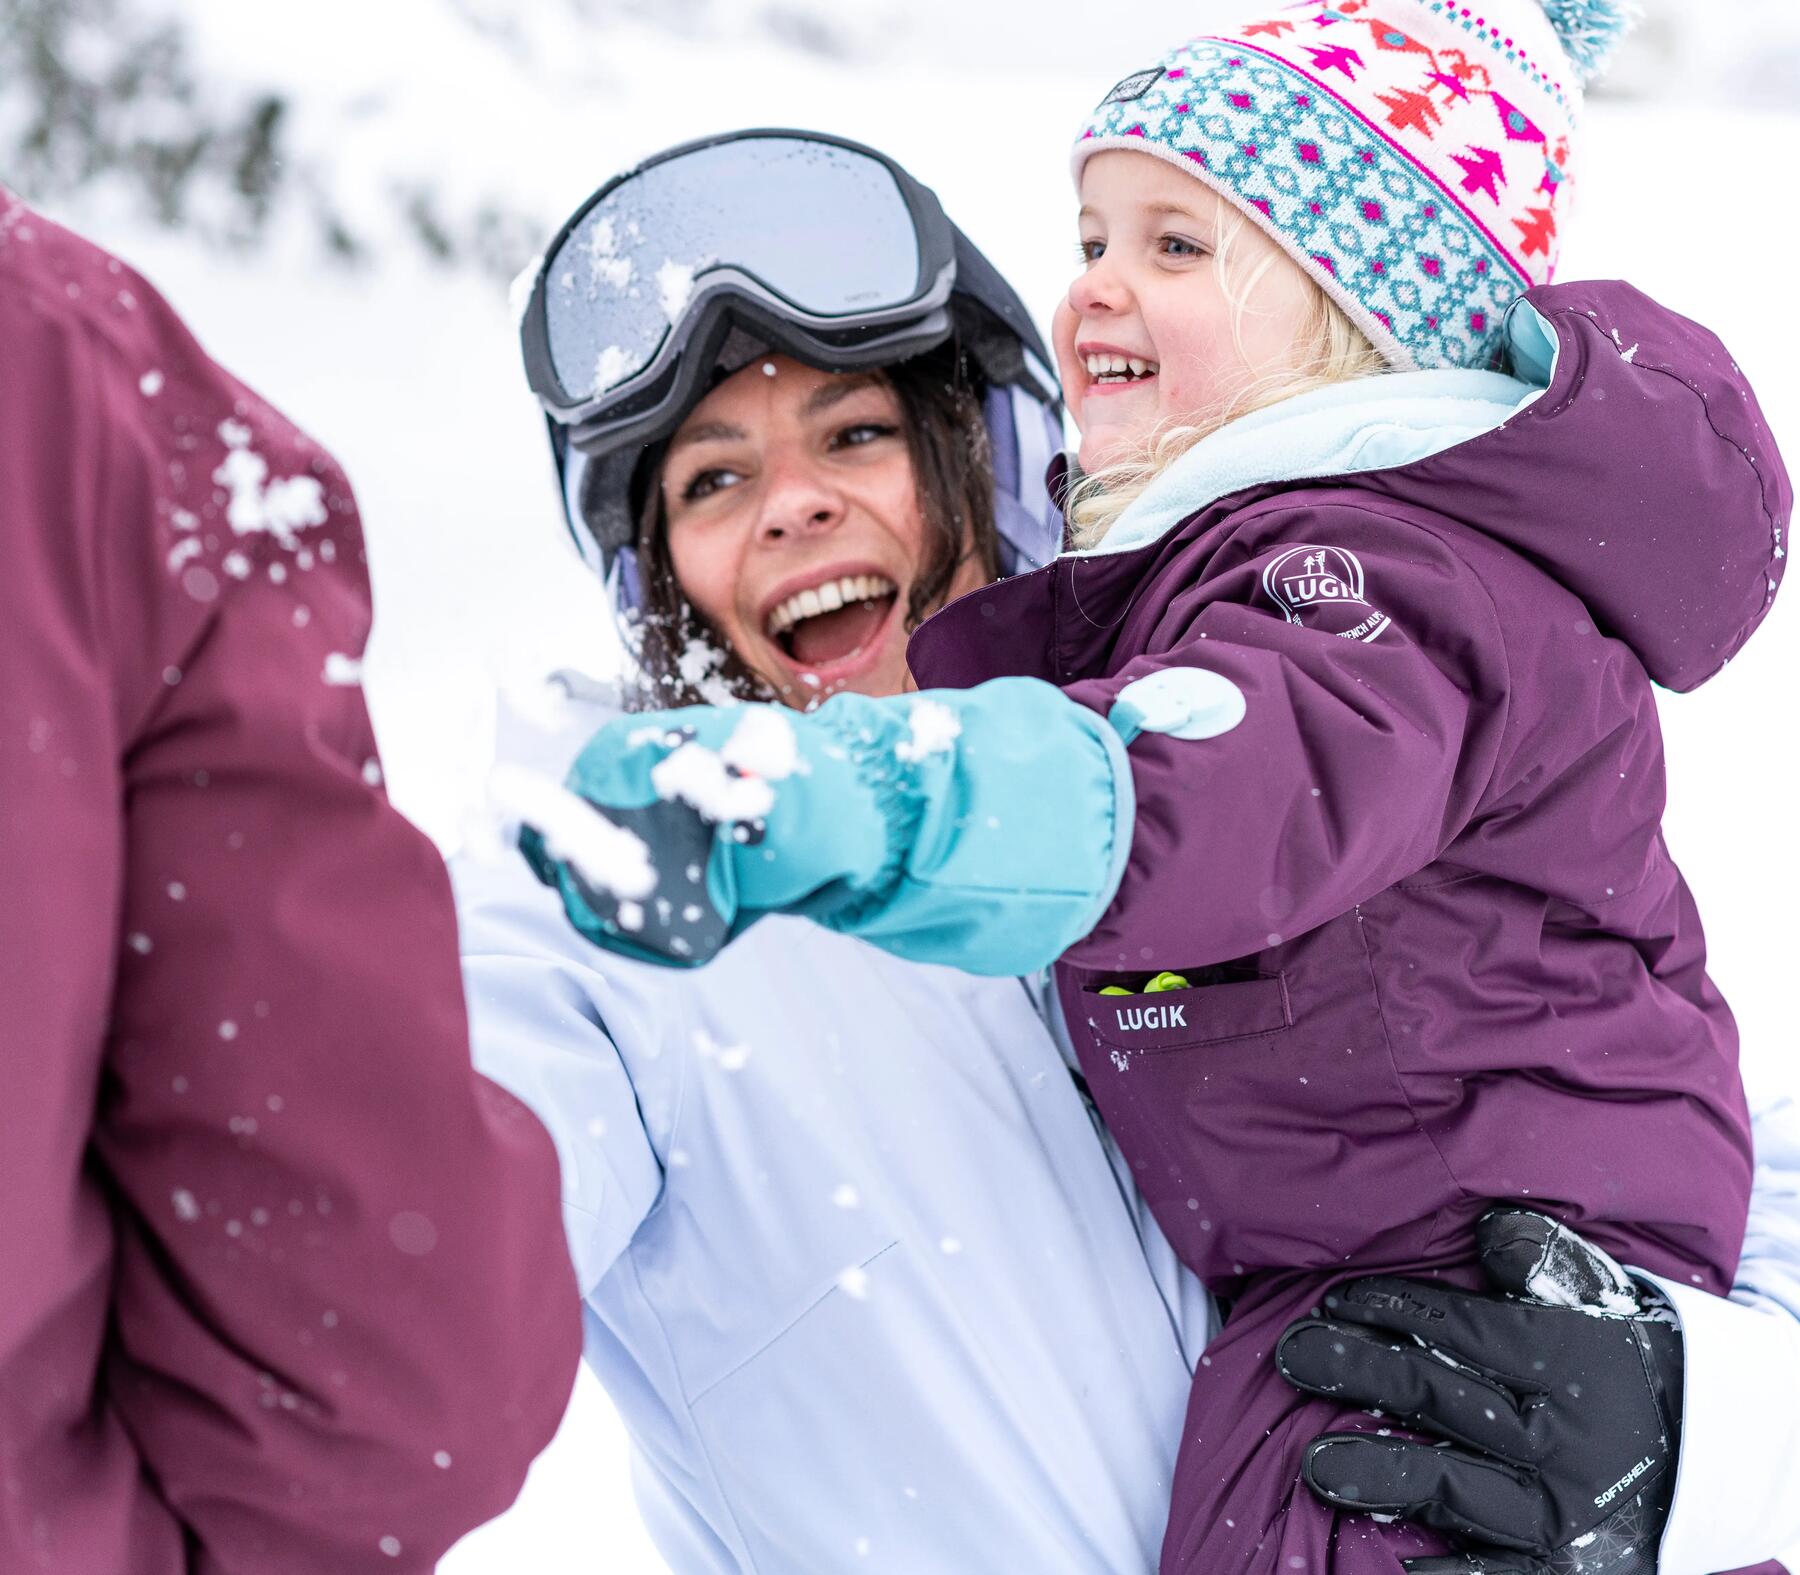 Bien entretenir et réparer votre combinaison de ski enfant